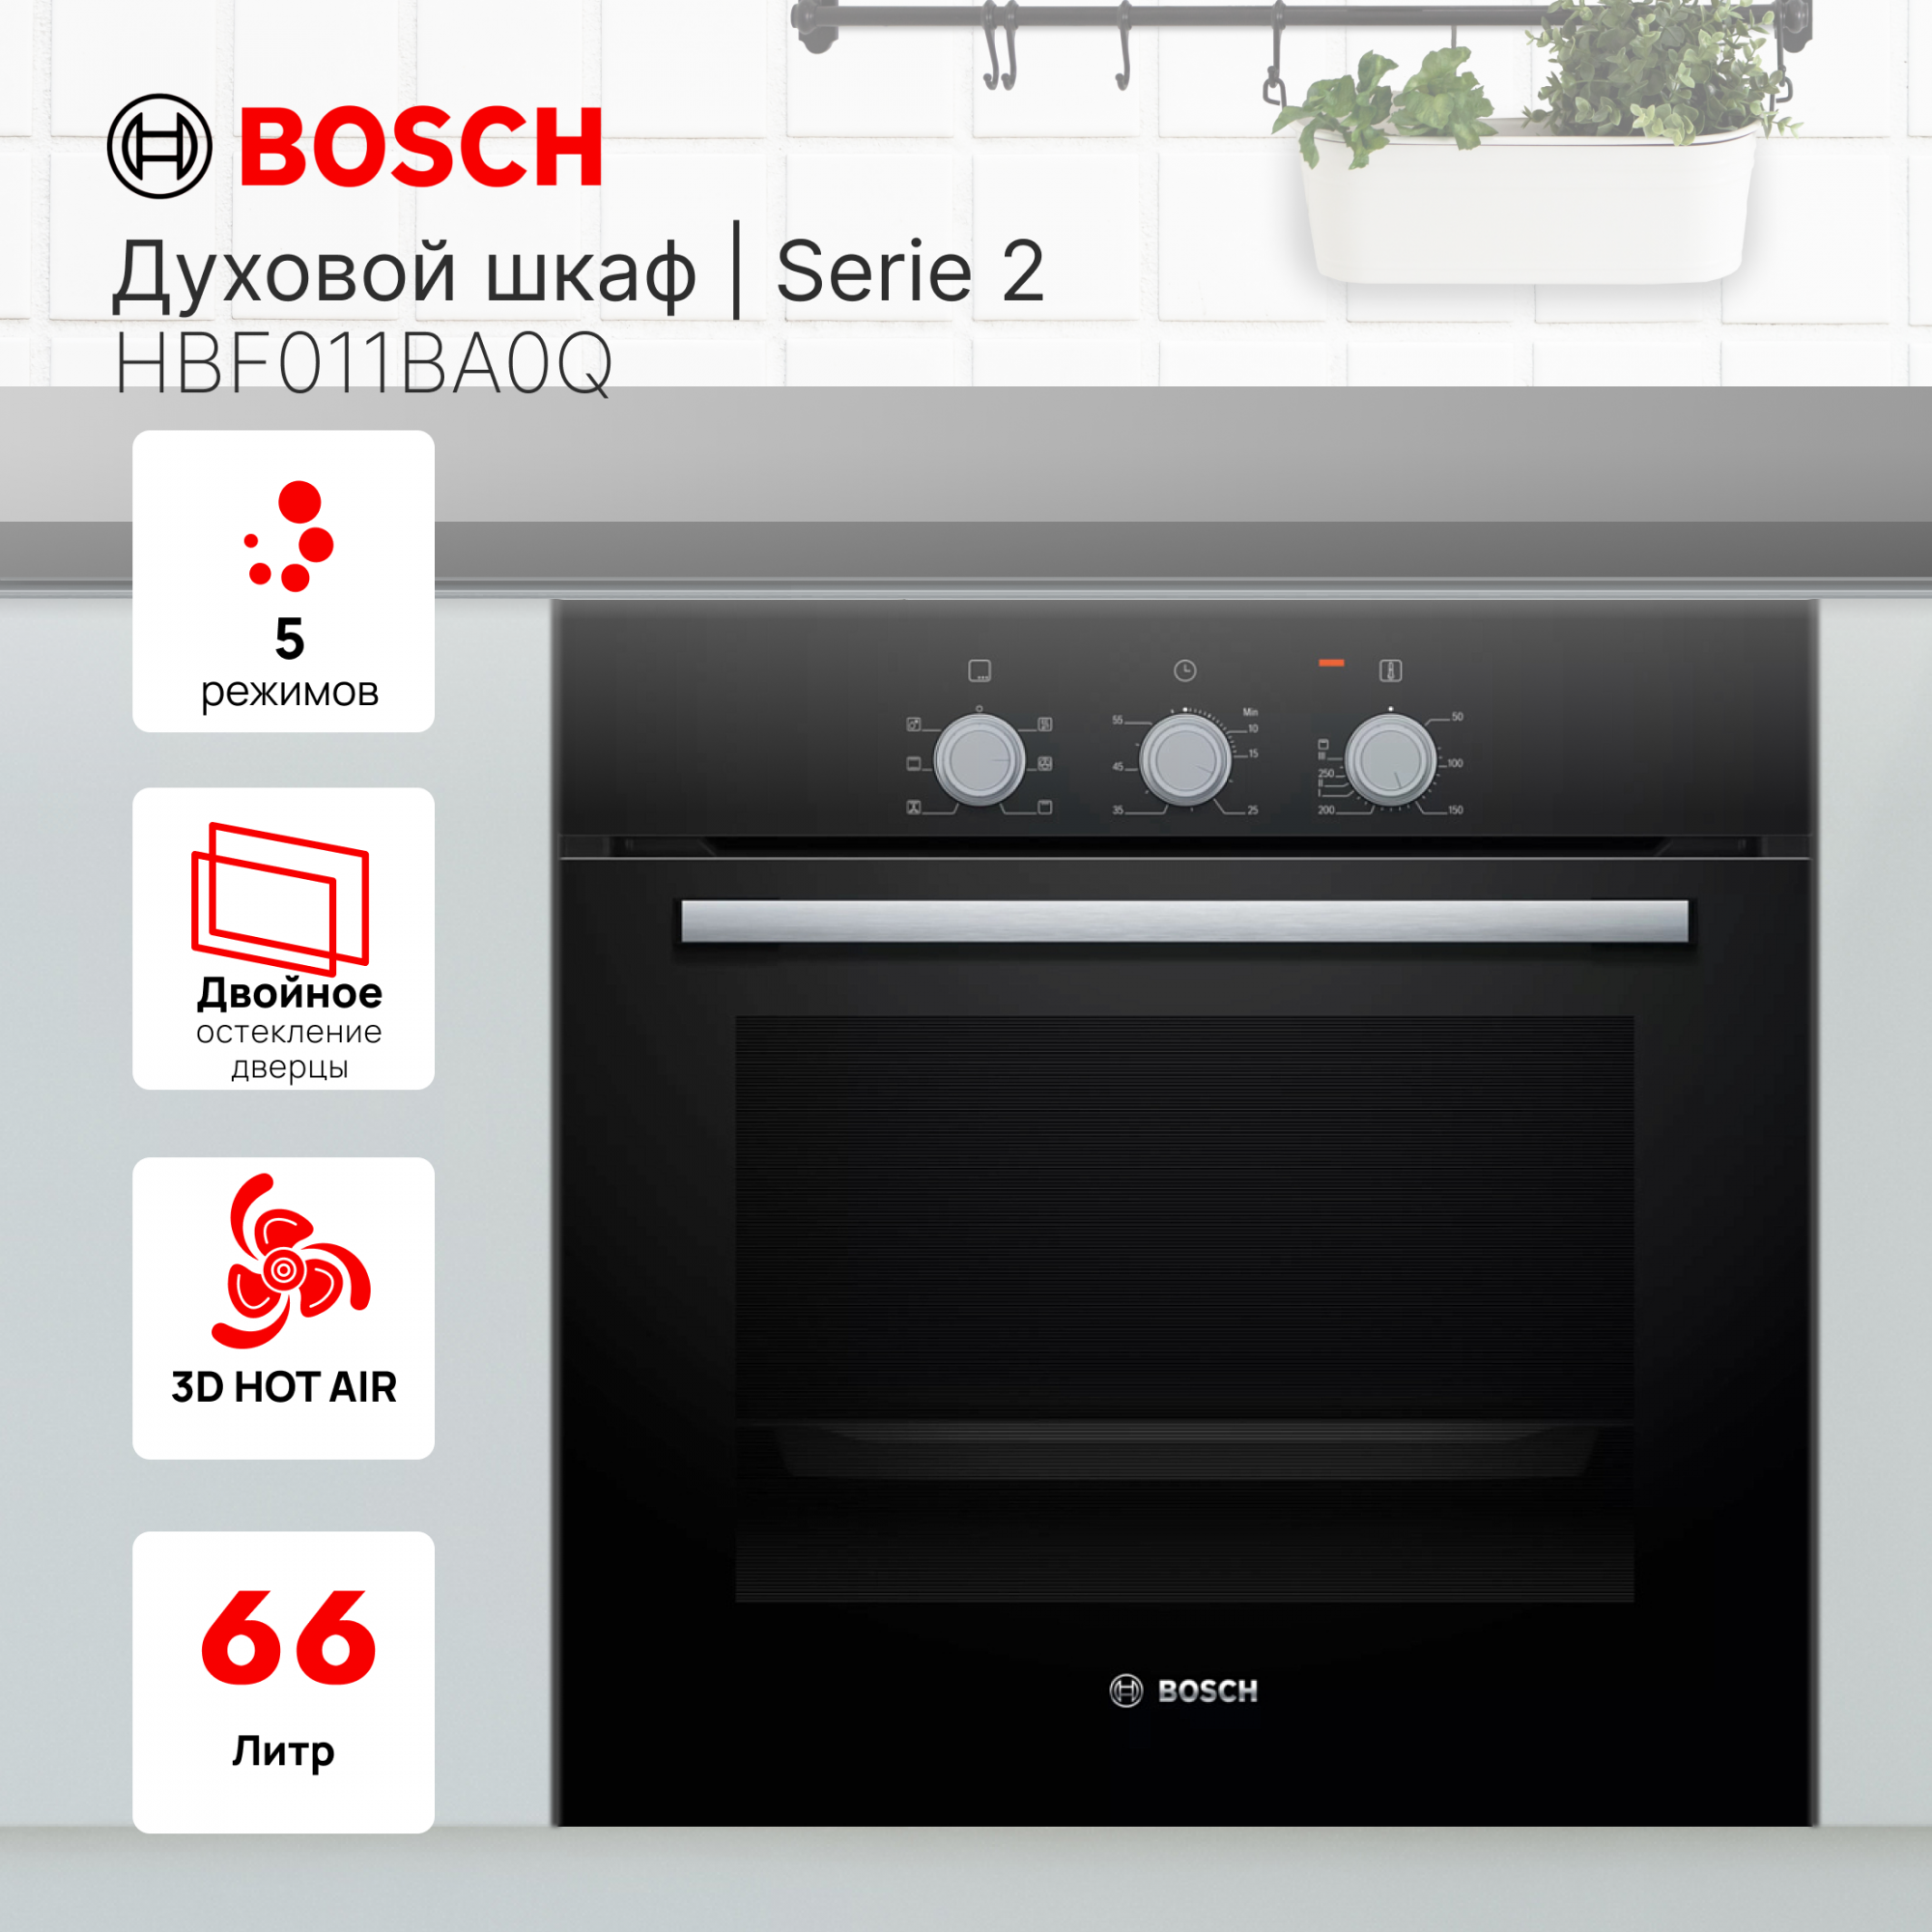 Встраиваемый электрический духовой шкаф Bosch HBF011BA0Q Black, купить в Москве, цены в интернет-магазинах на Мегамаркет